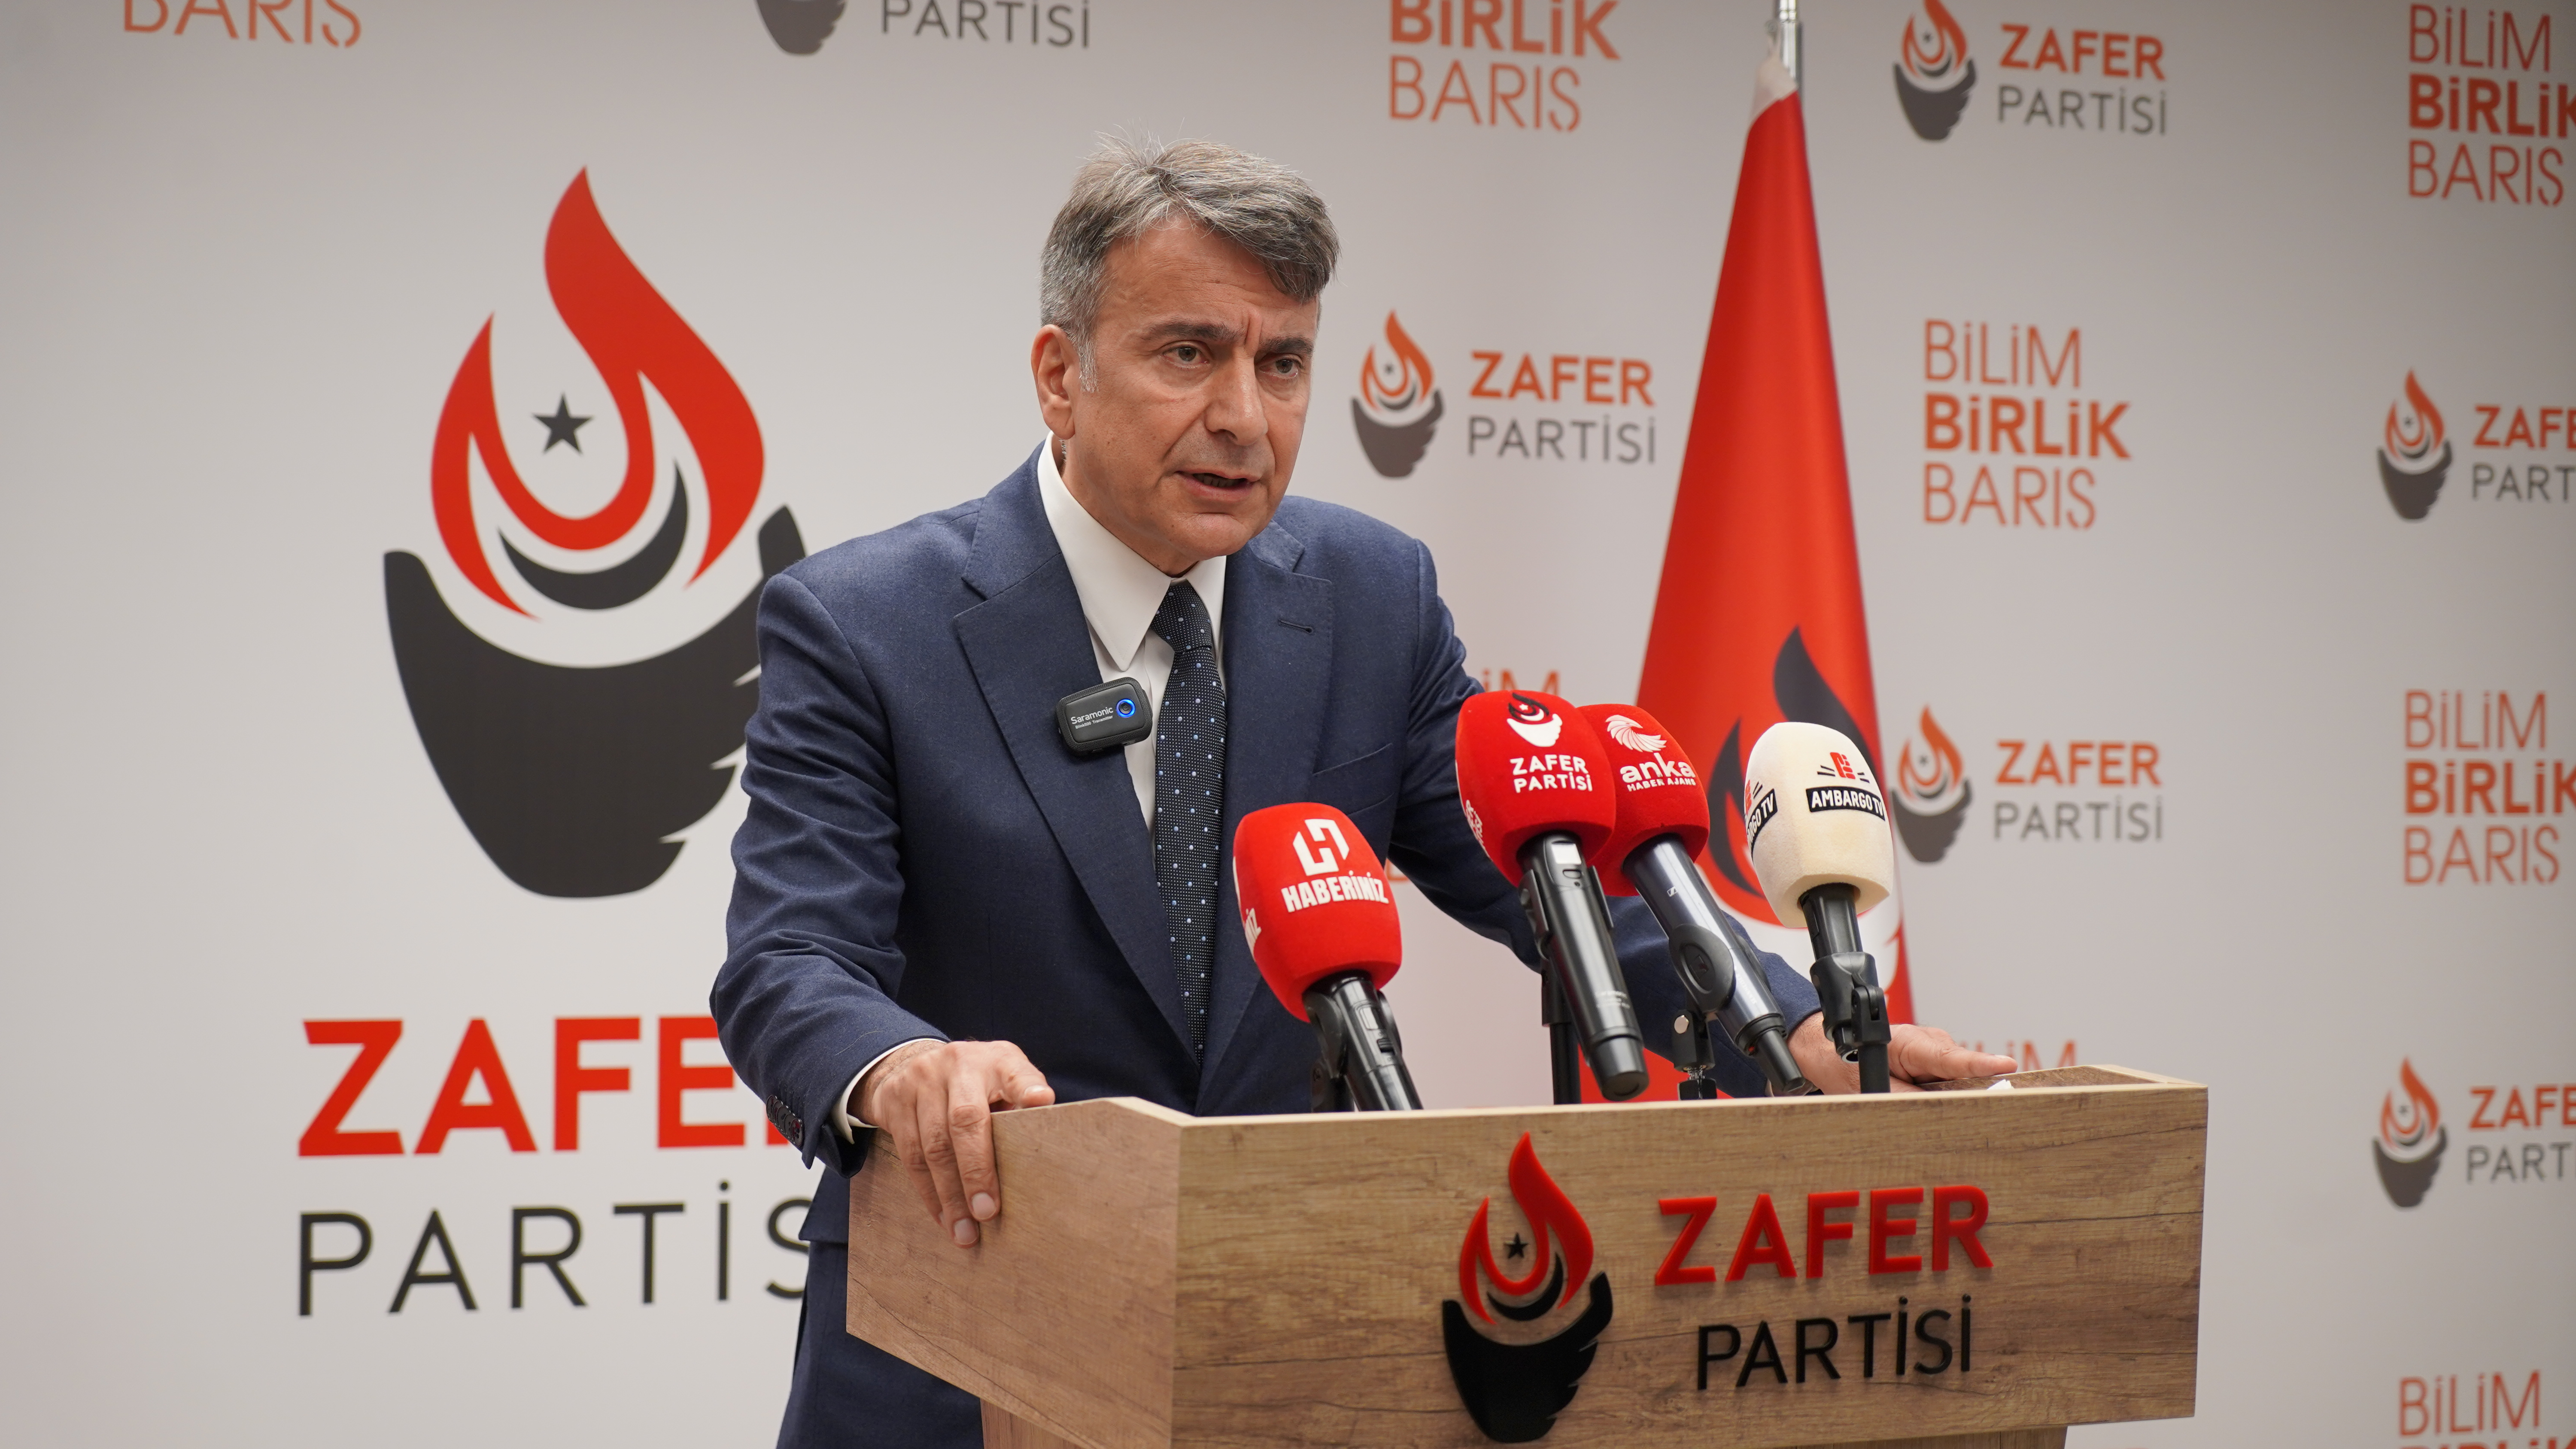 Zafer Partisi Sözcüsü Azmi Karamahmutoğlu, Türkiye’nin tarım politikalarına ve ekonomik krizine yönelik eleştirilerde bulundu.